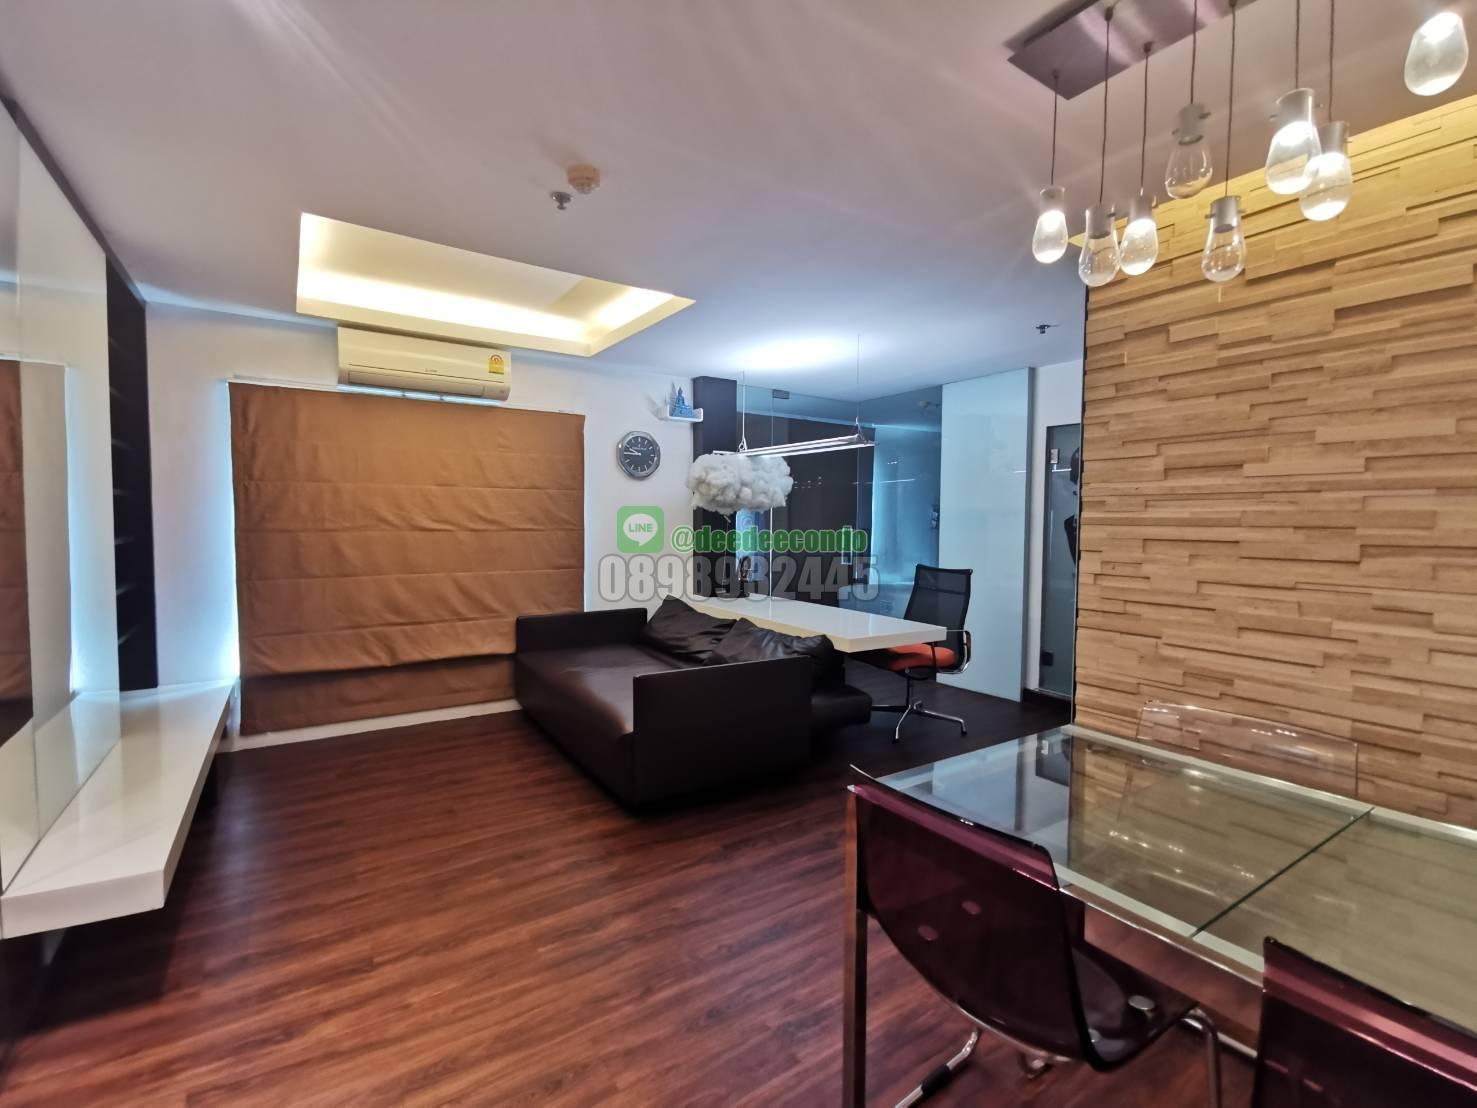 ขายคอนโด ลุมพินี เพลส พระราม9-รัชดา คอนโดมิเนียม - Sell Condo Lumpini Place Rama IX-Ratchada condominium - 552839